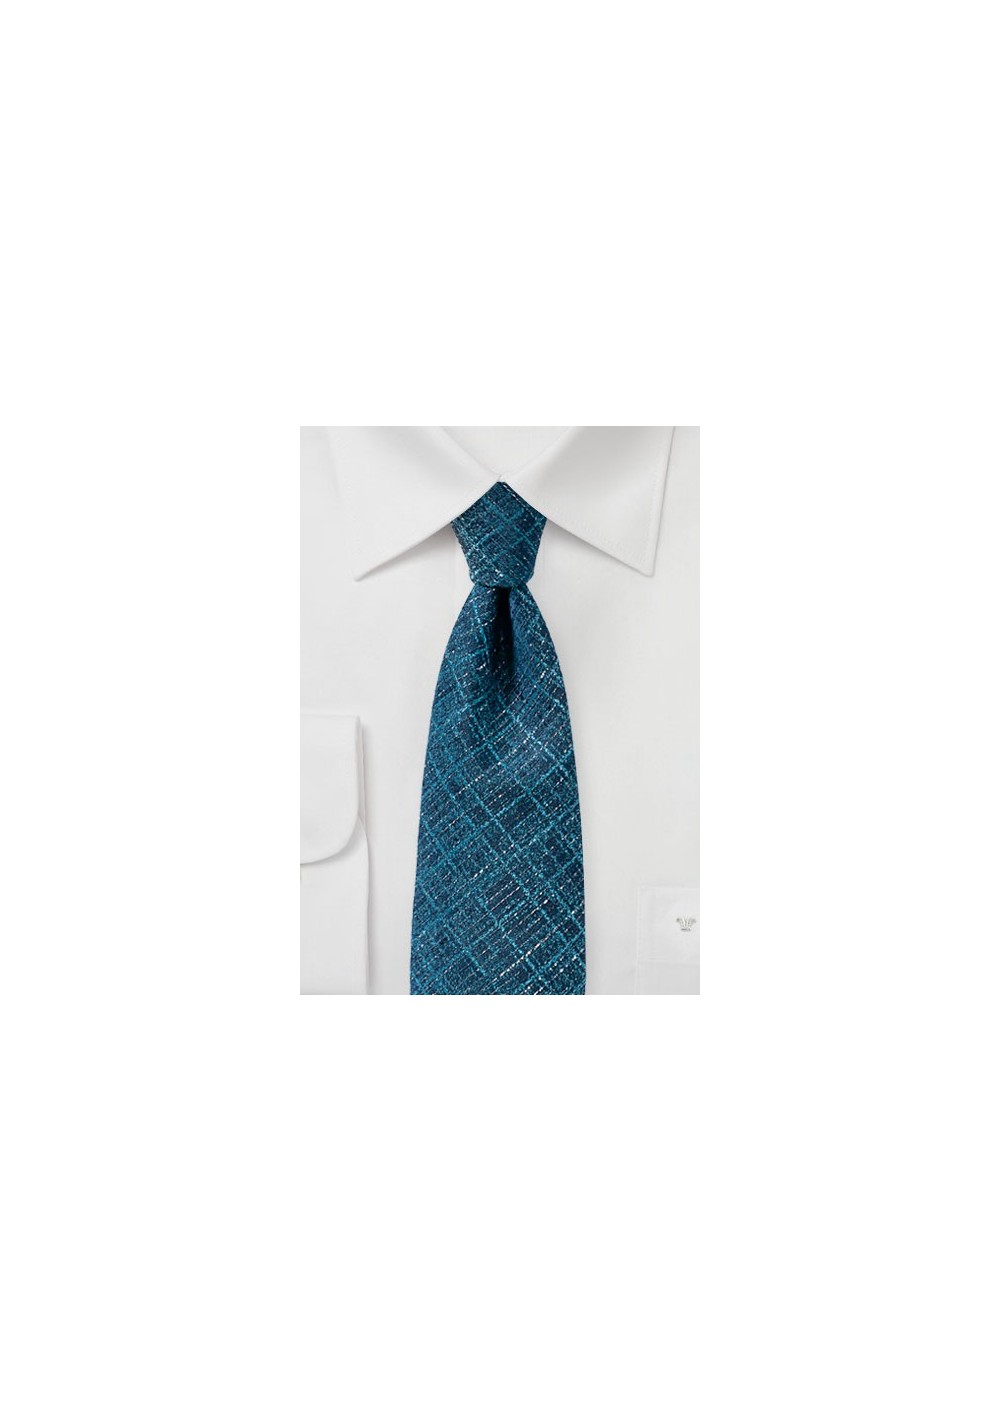 Teal Blue Textured Plaid Tie